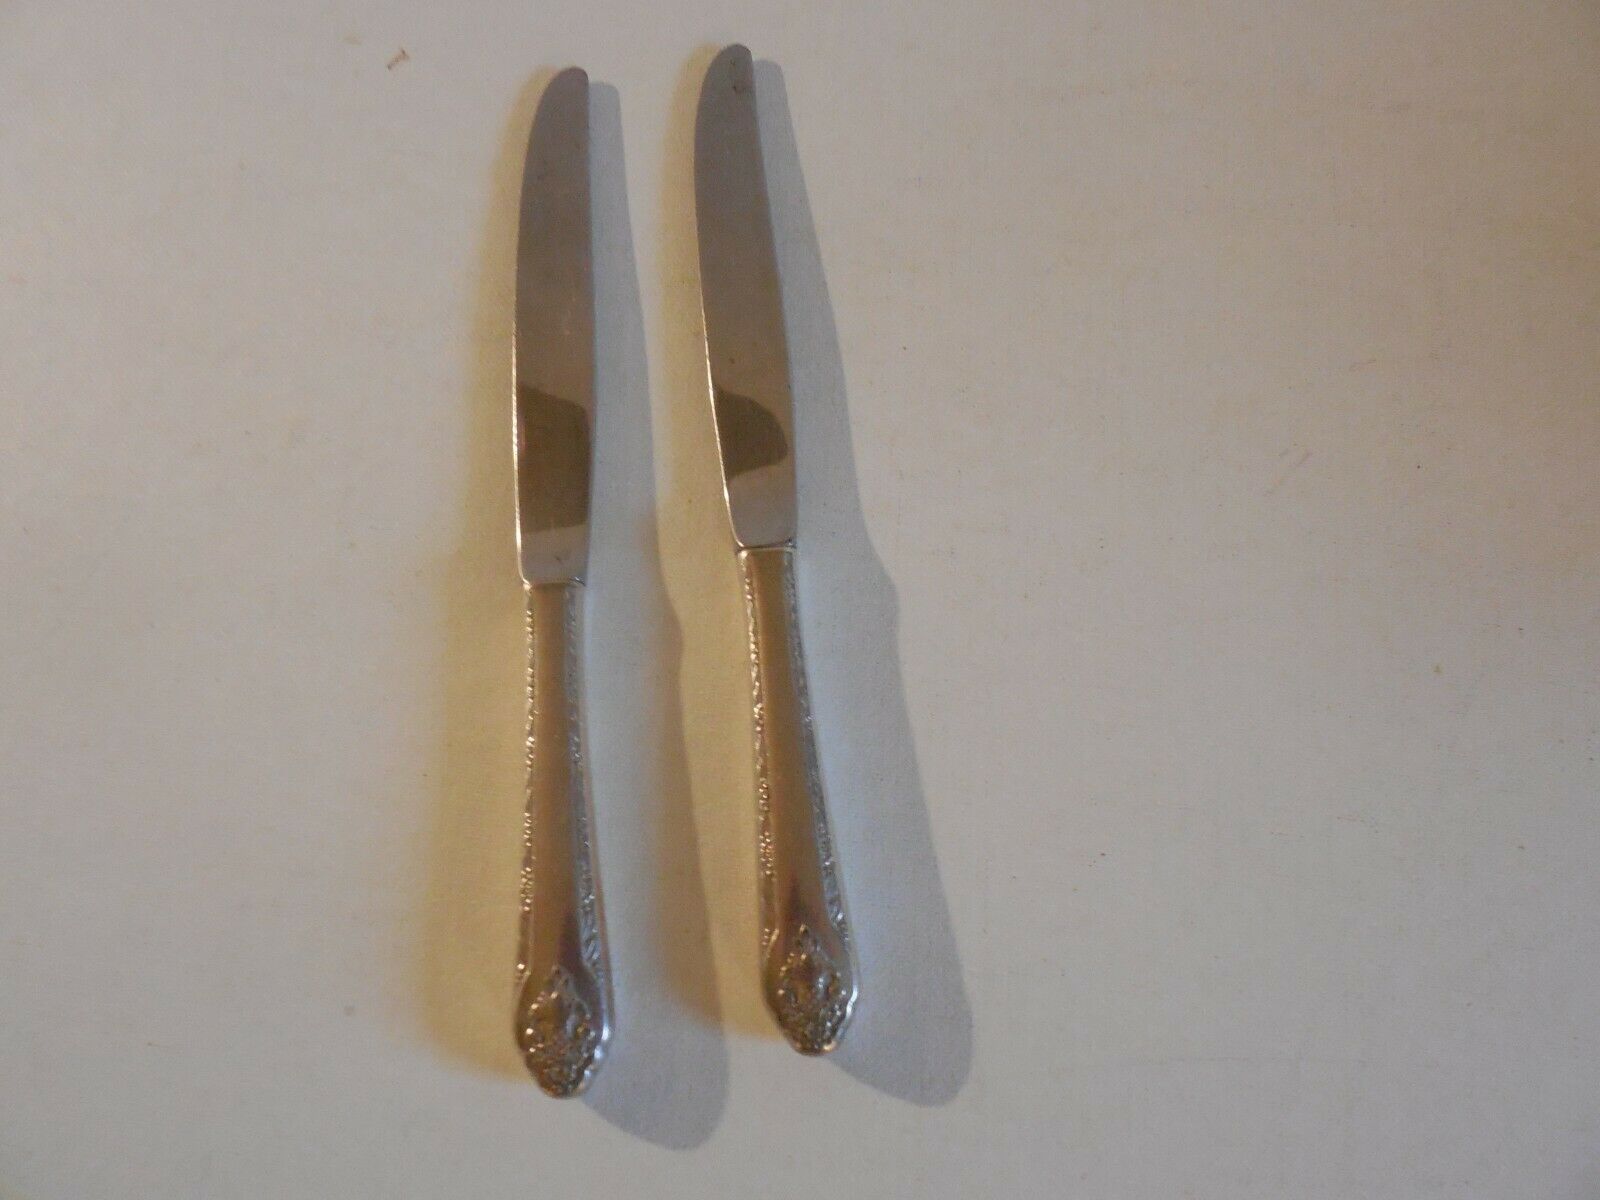 Holmes & Edwards Lovely Lady Silverplate:  2 Dinner Knives - $7.77